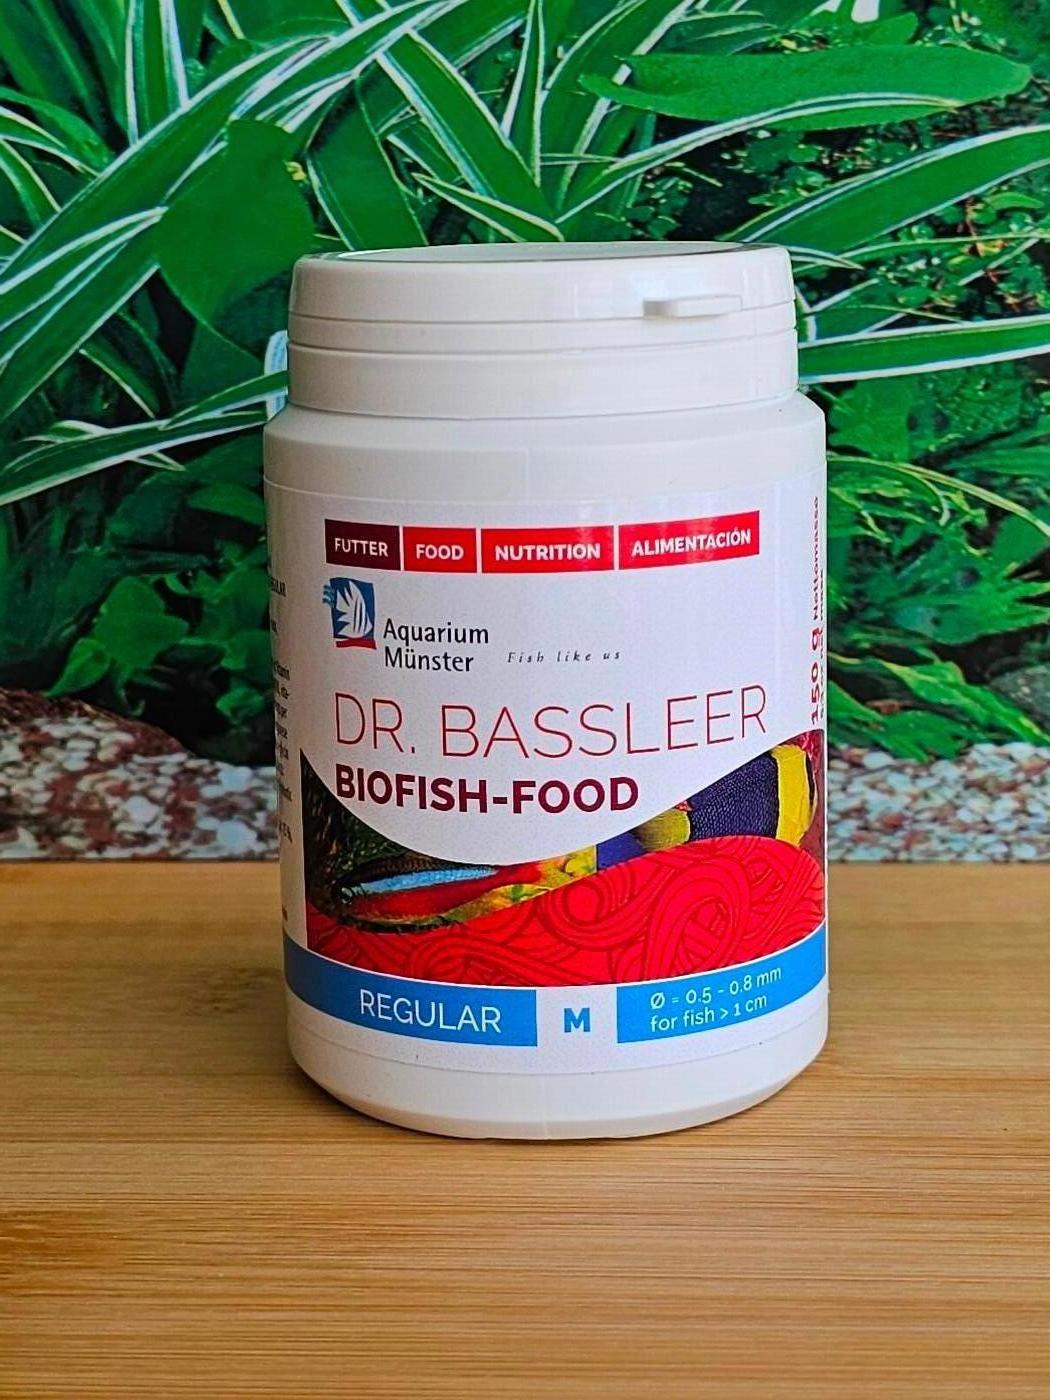 Dr. Bassleer Biofish-Food REGULAR M